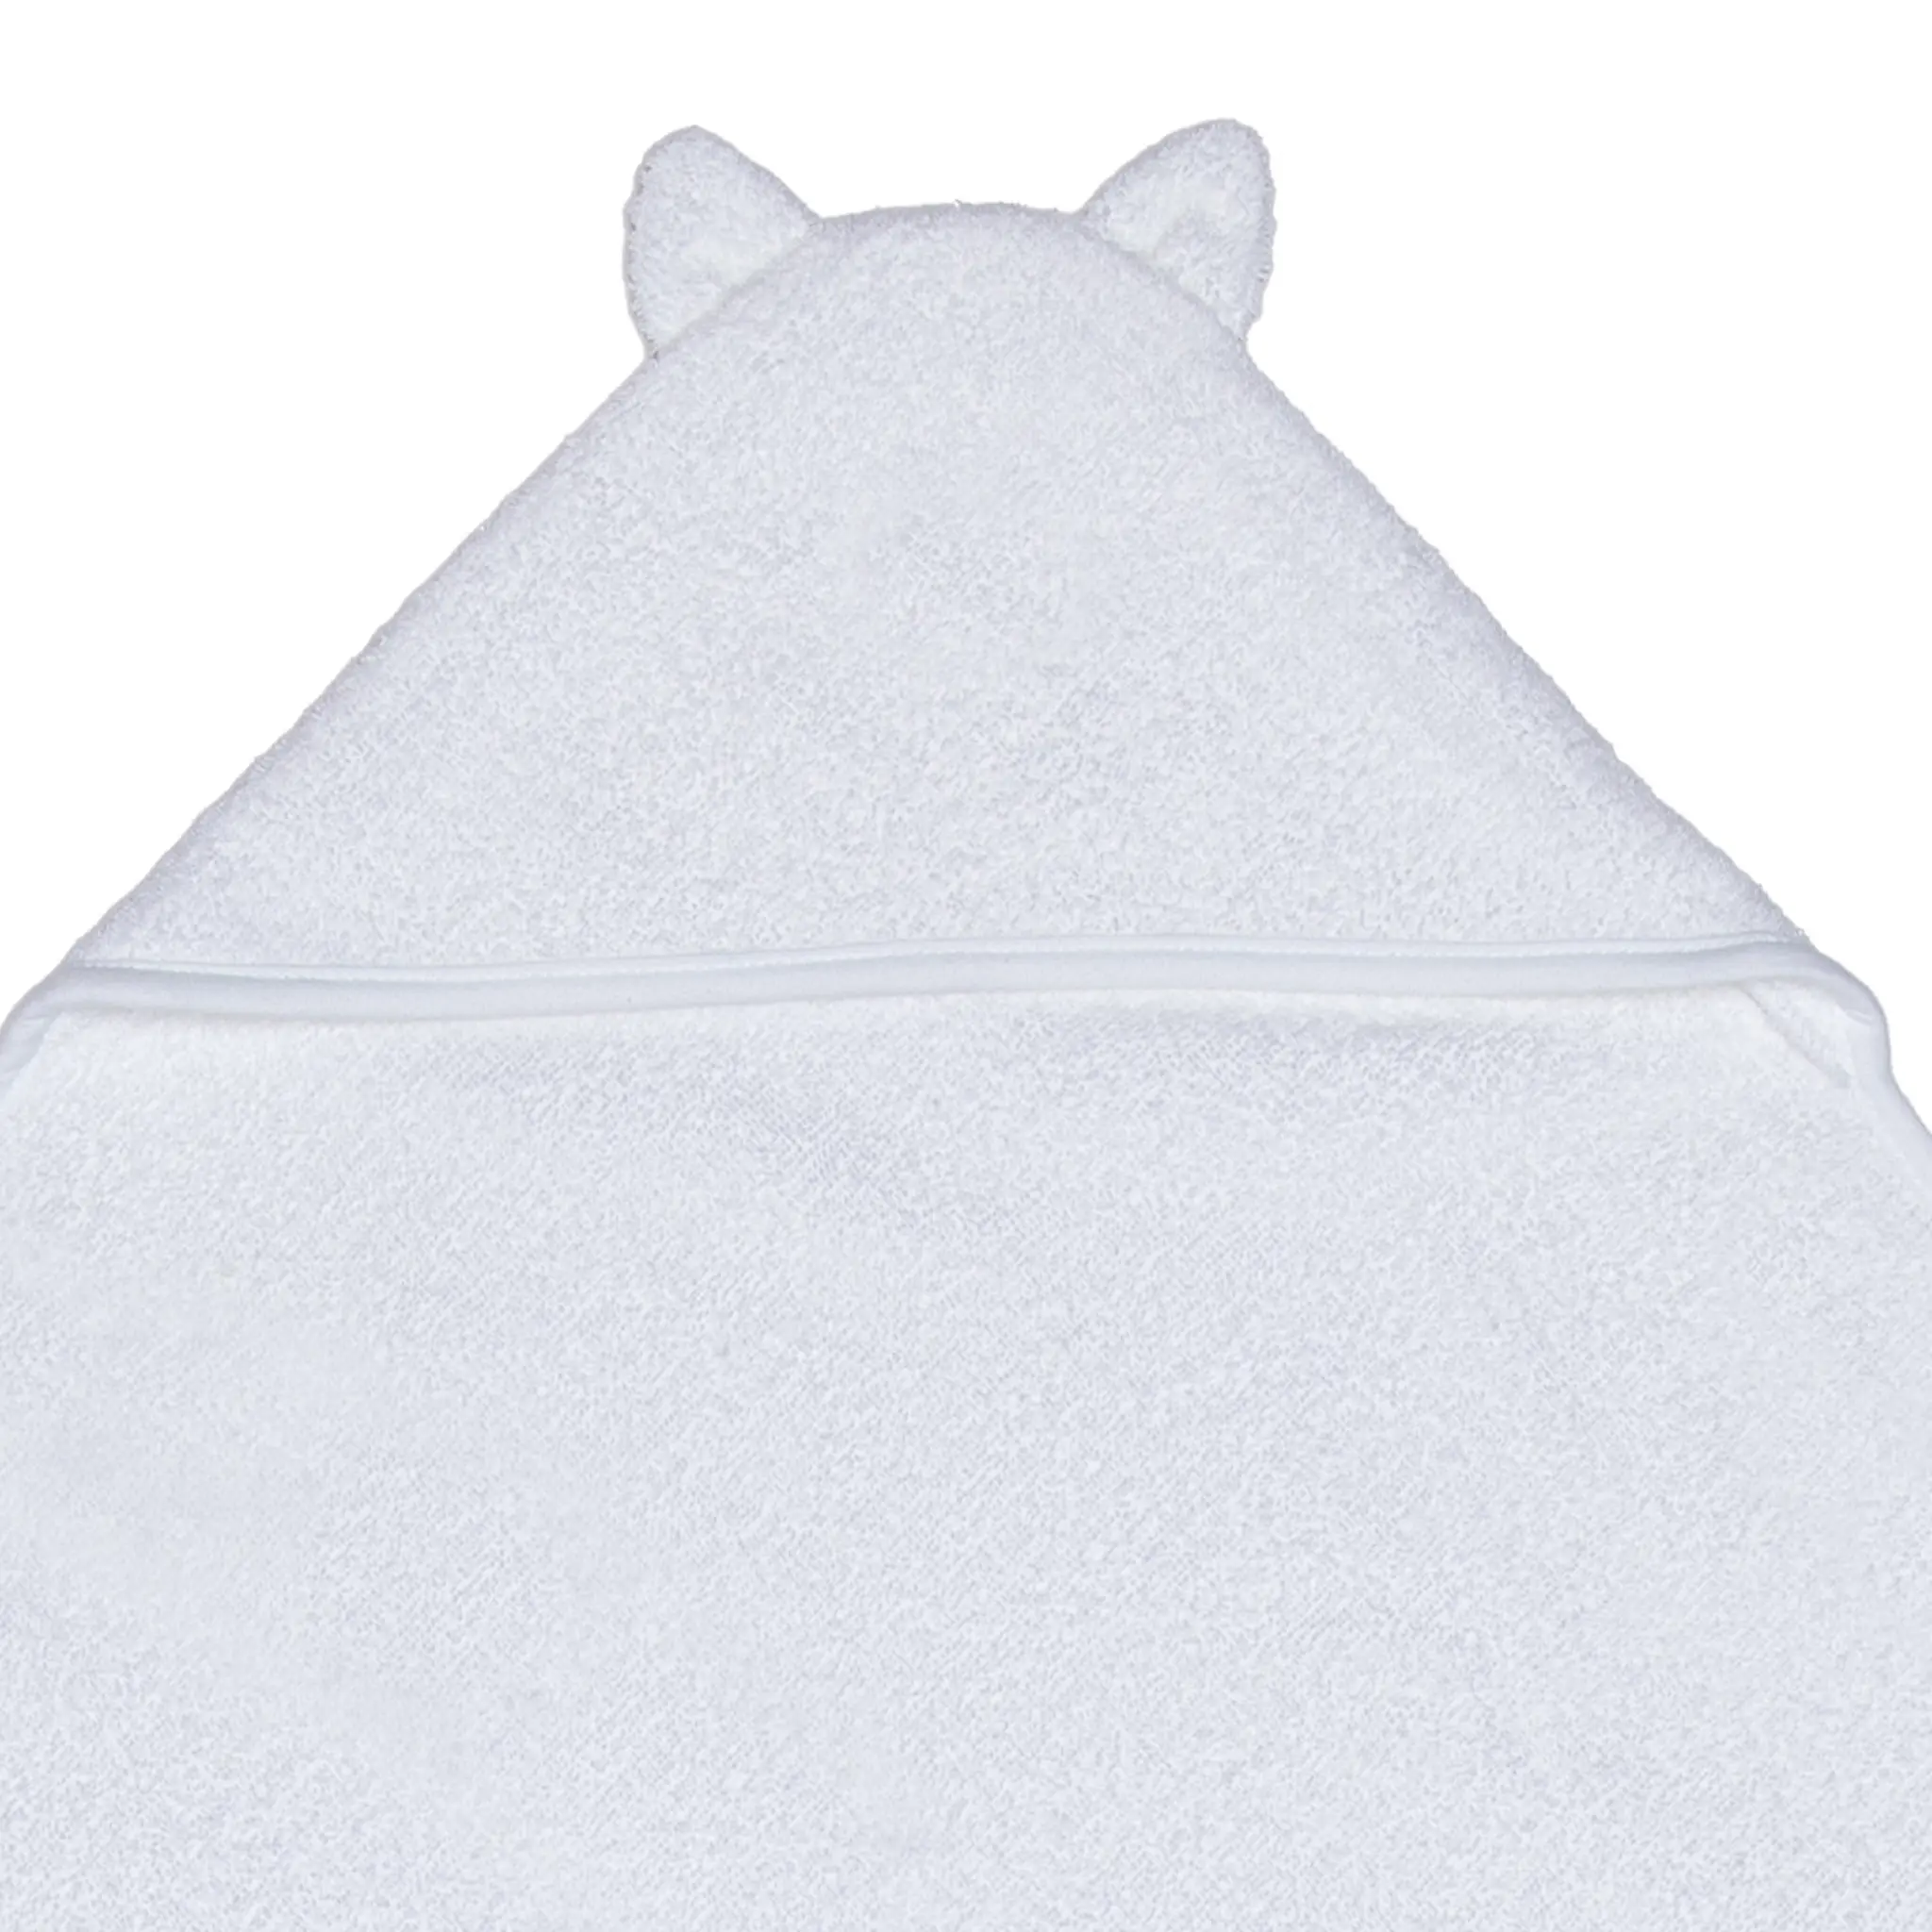 Moomin Arabia Muumi Hupullinen pyyhe Muumipeikko 80x80 cm Valkoinen